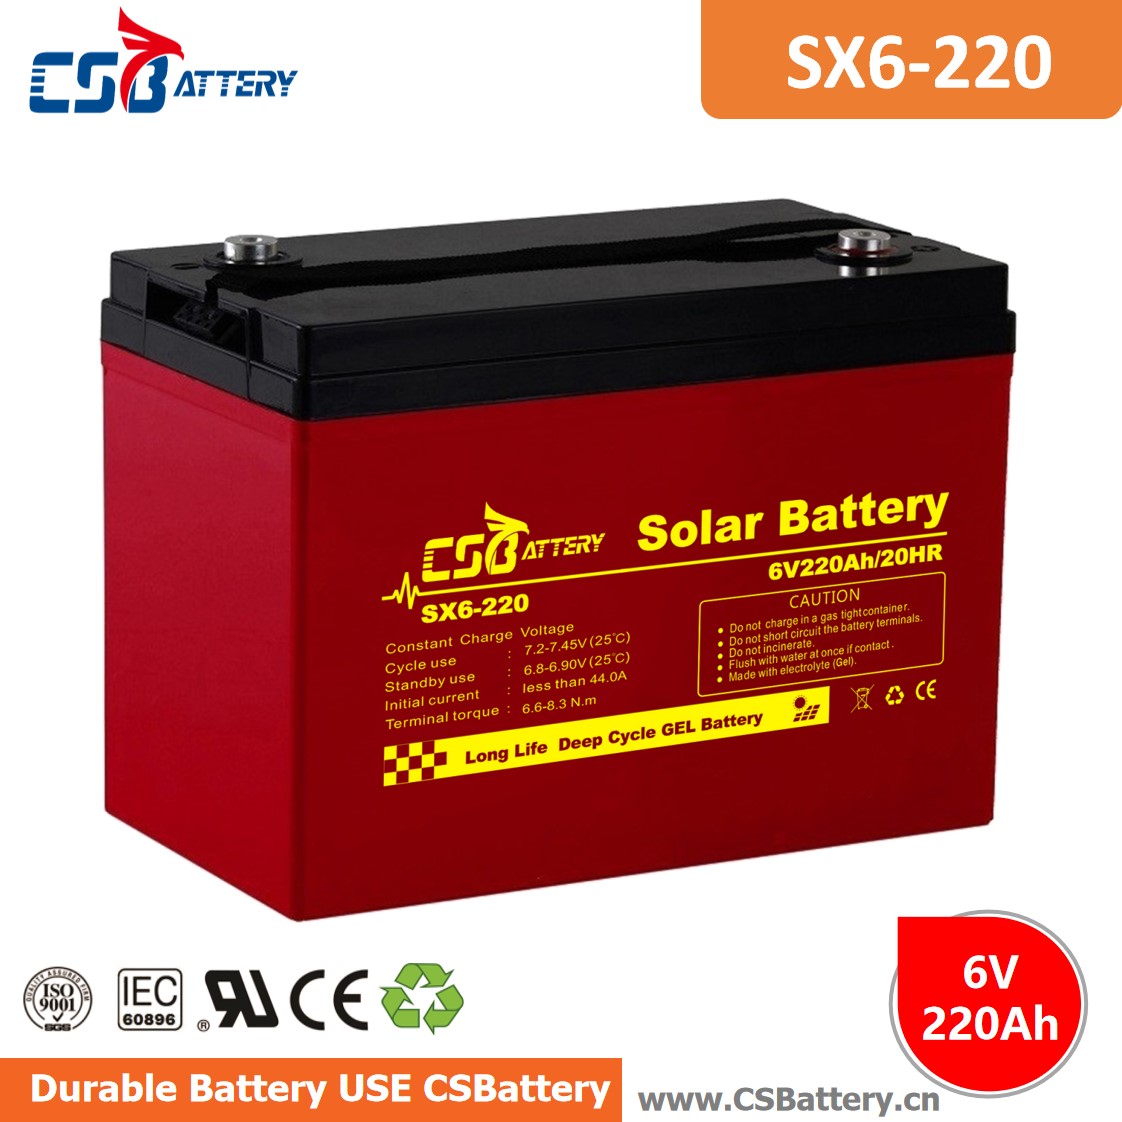 SX6-220 6V 220Ah Deep Cycle GEL Batterie-Ada
